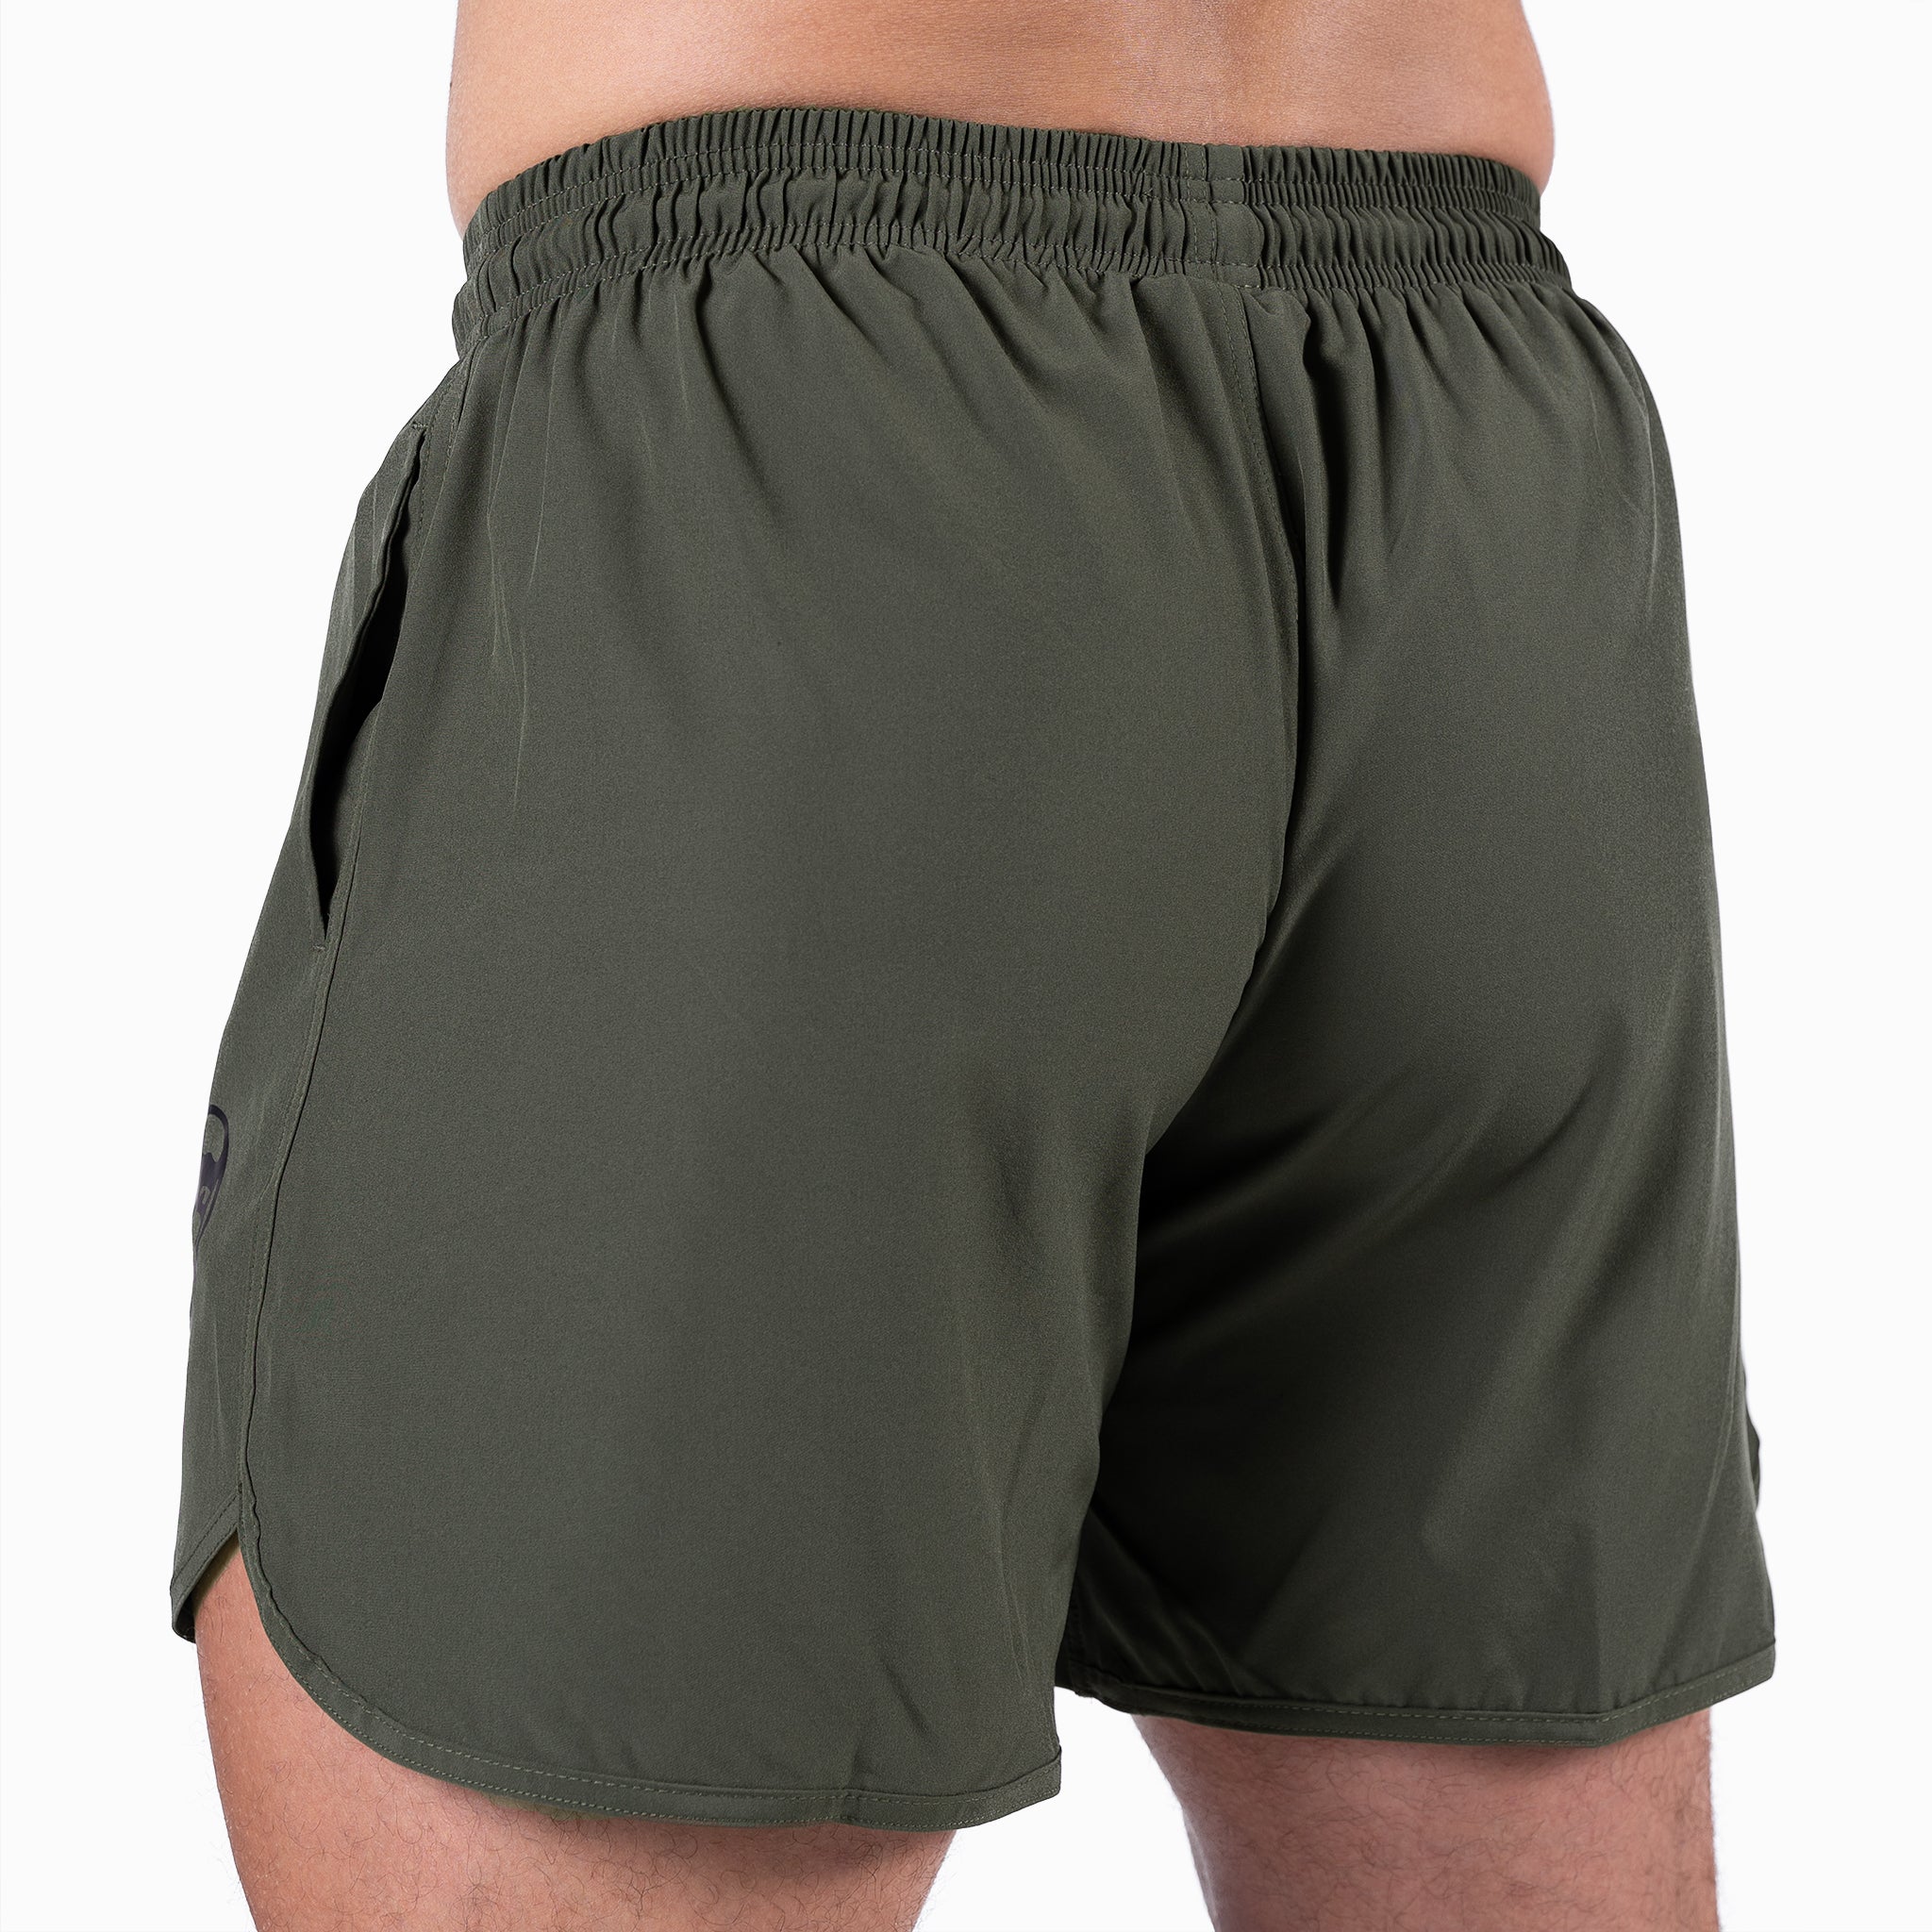 green training shorts 